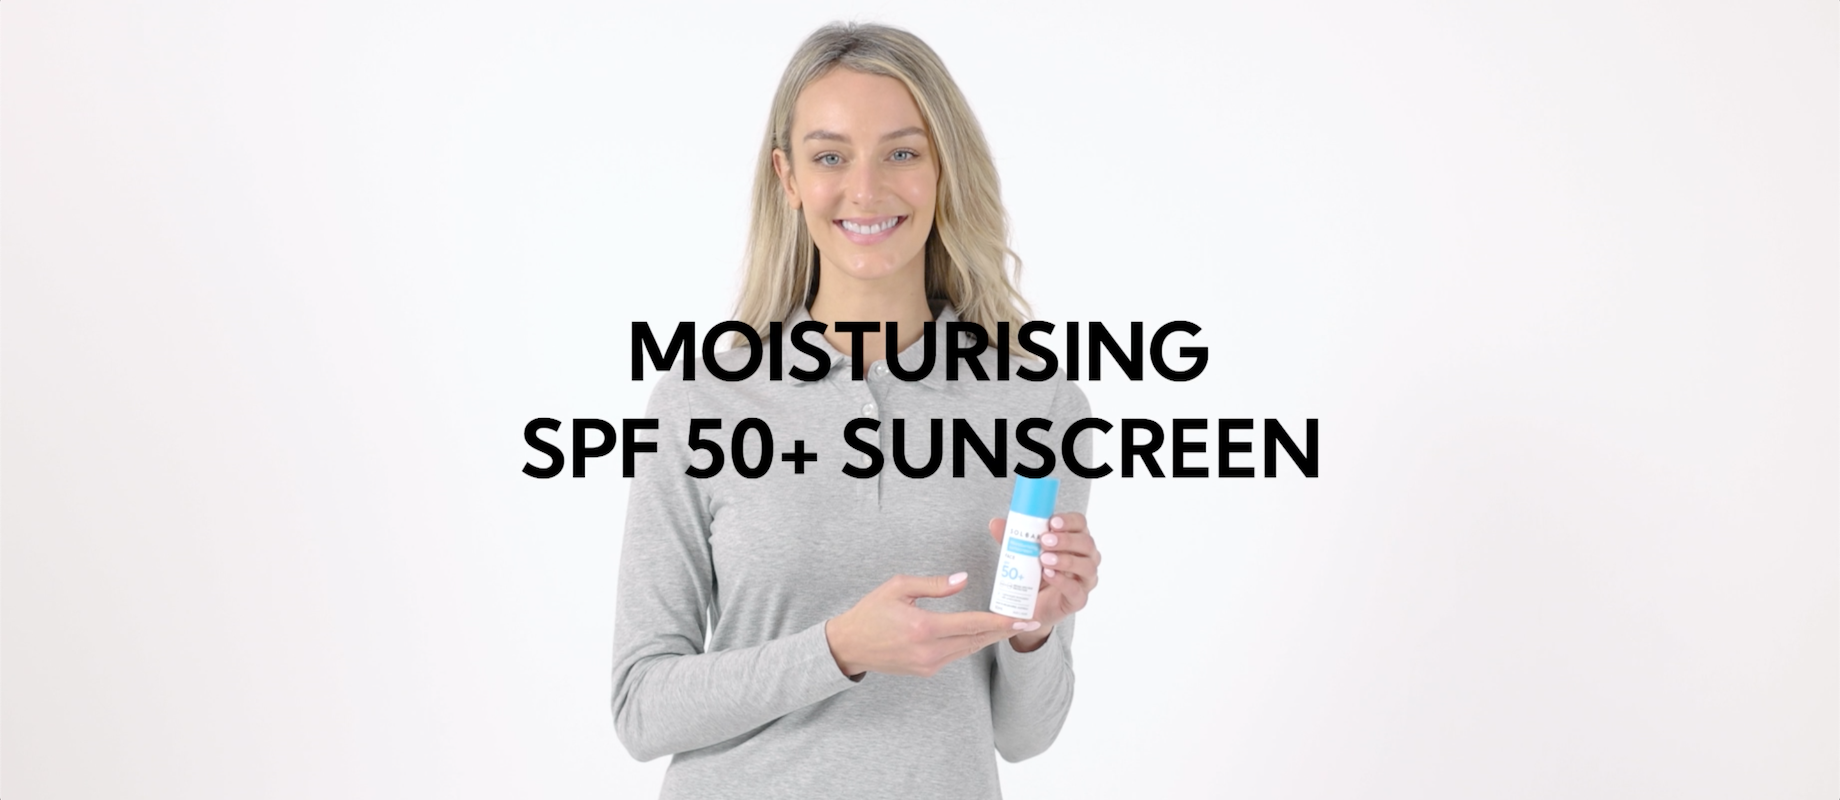 Solbari Moisturising SPF50+ Face Sunscreen 50ml | Sensitive Skin Sunscreen